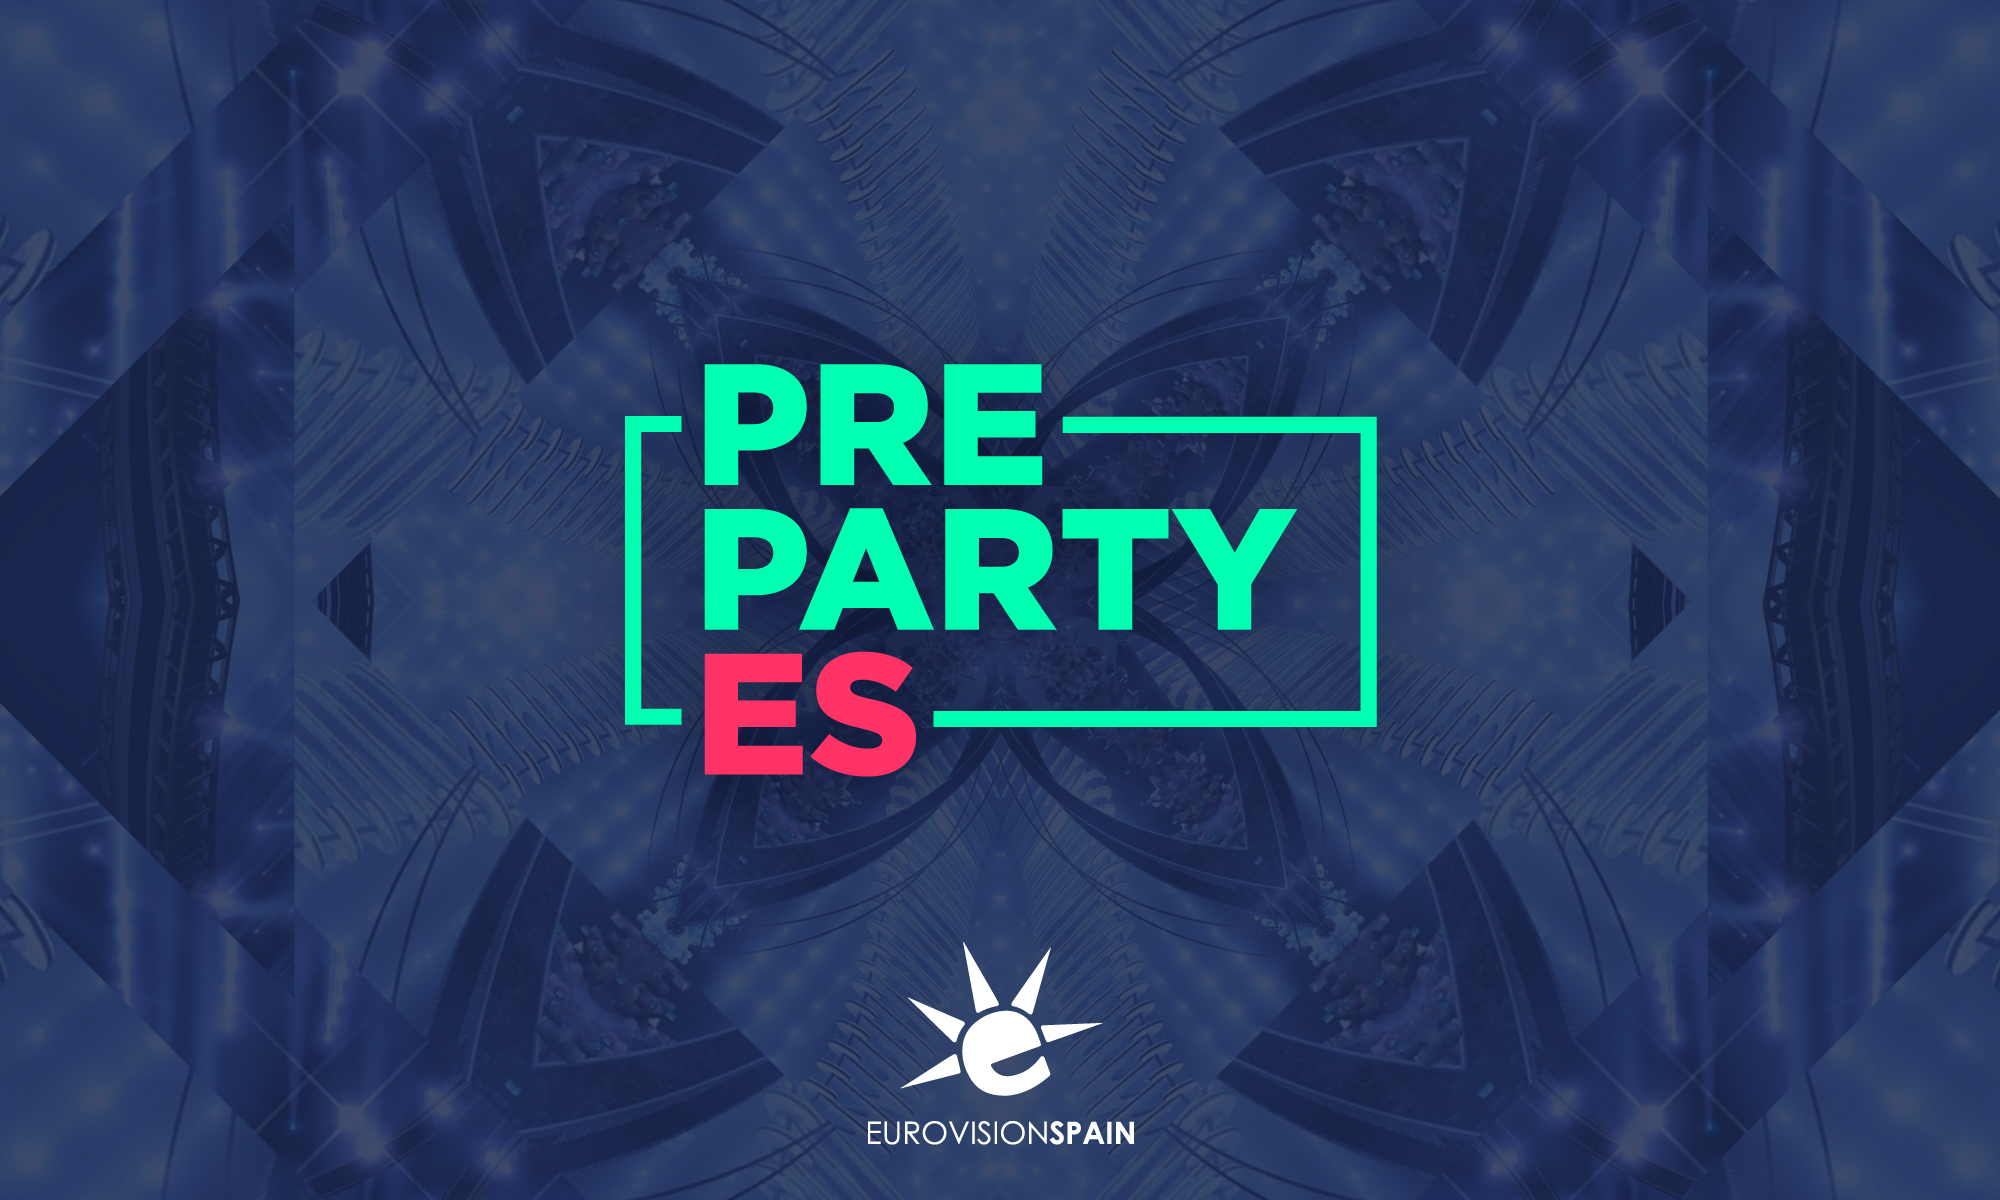 La Pre-Party 2019 de Eurovision-Spain supera el 75% de sus entradas vendidas